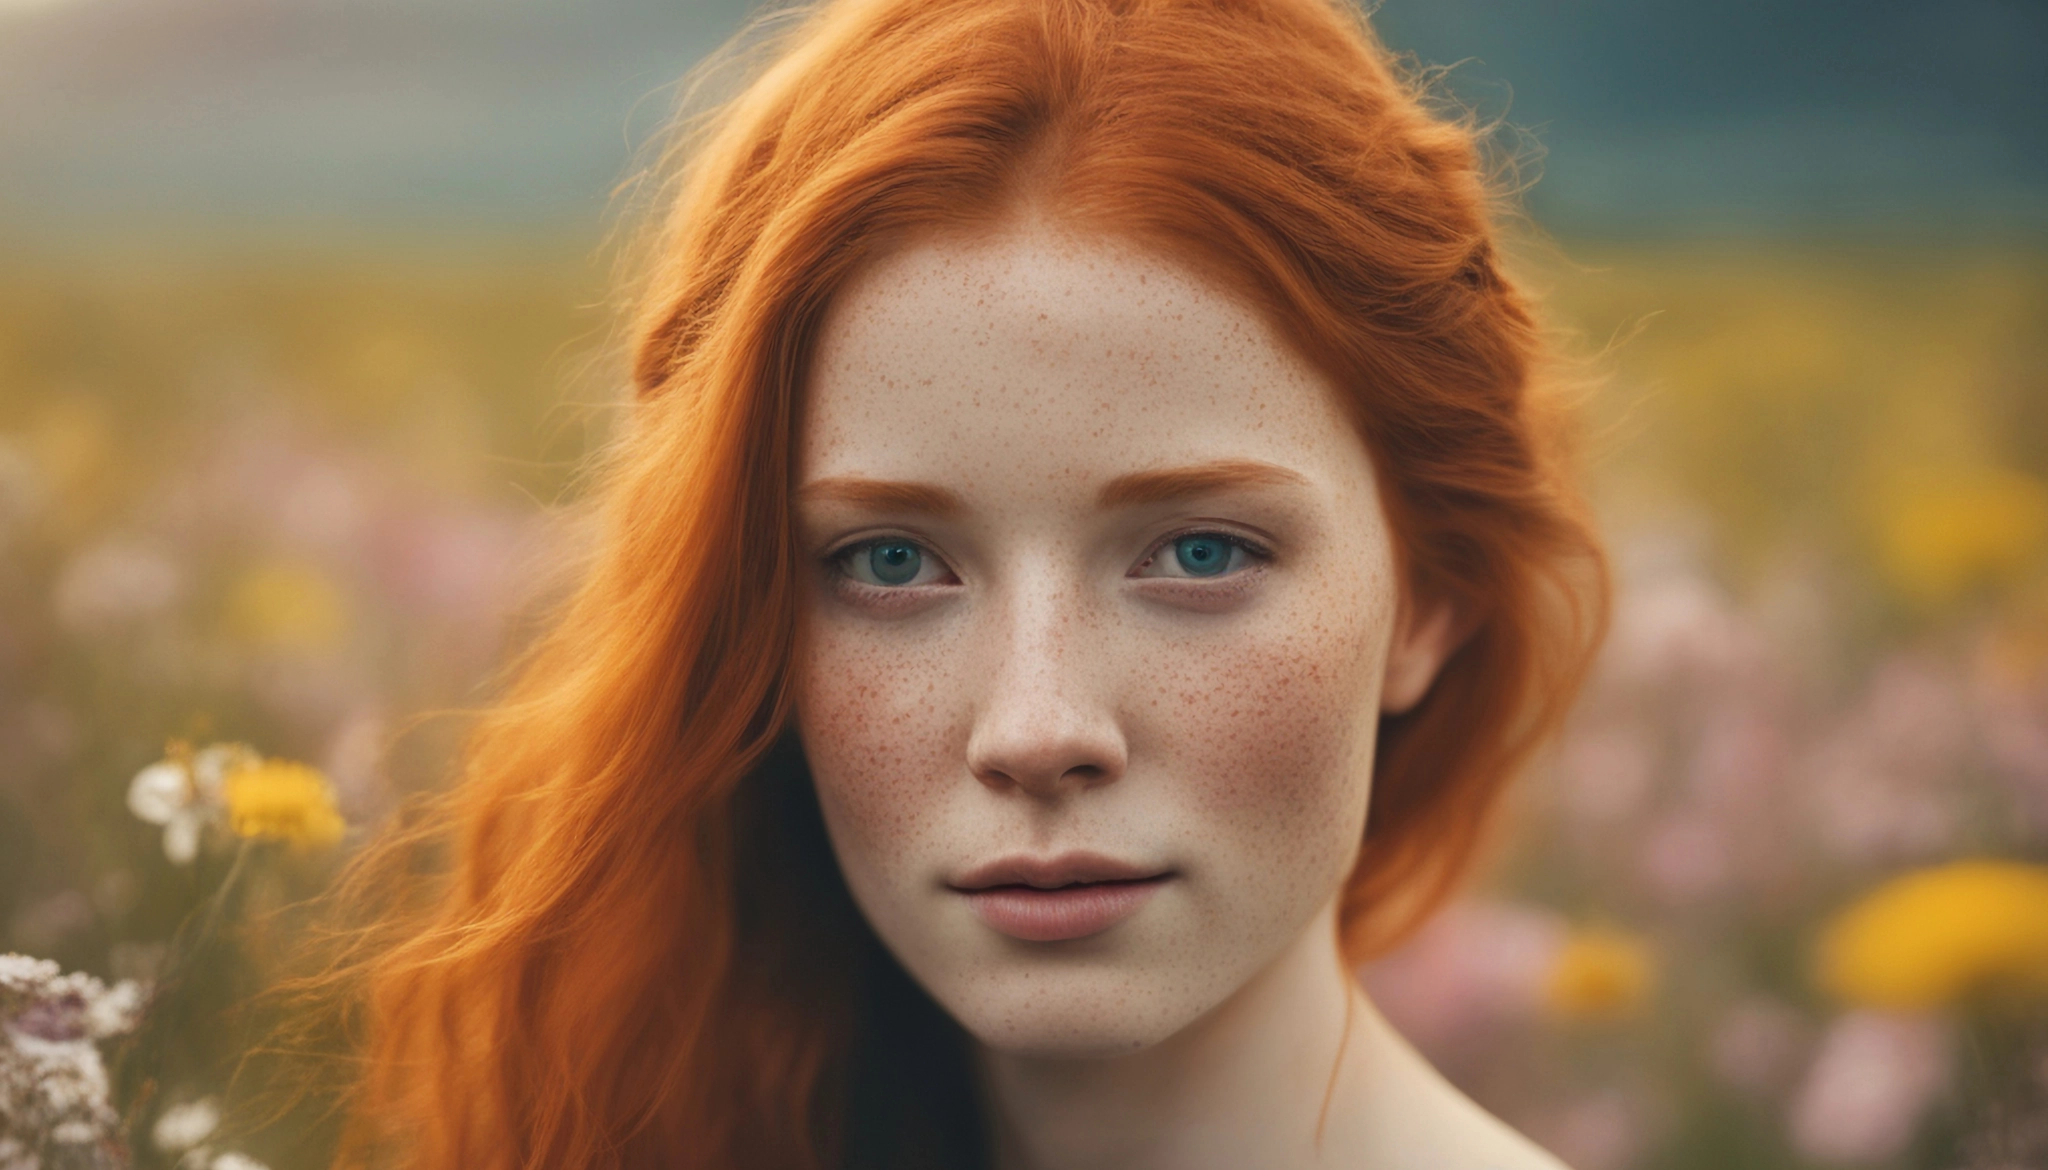 Schönes Mädchen mit Sommersprossen und rotem Haar generiert mit dem Image Generator von Let's Enhance